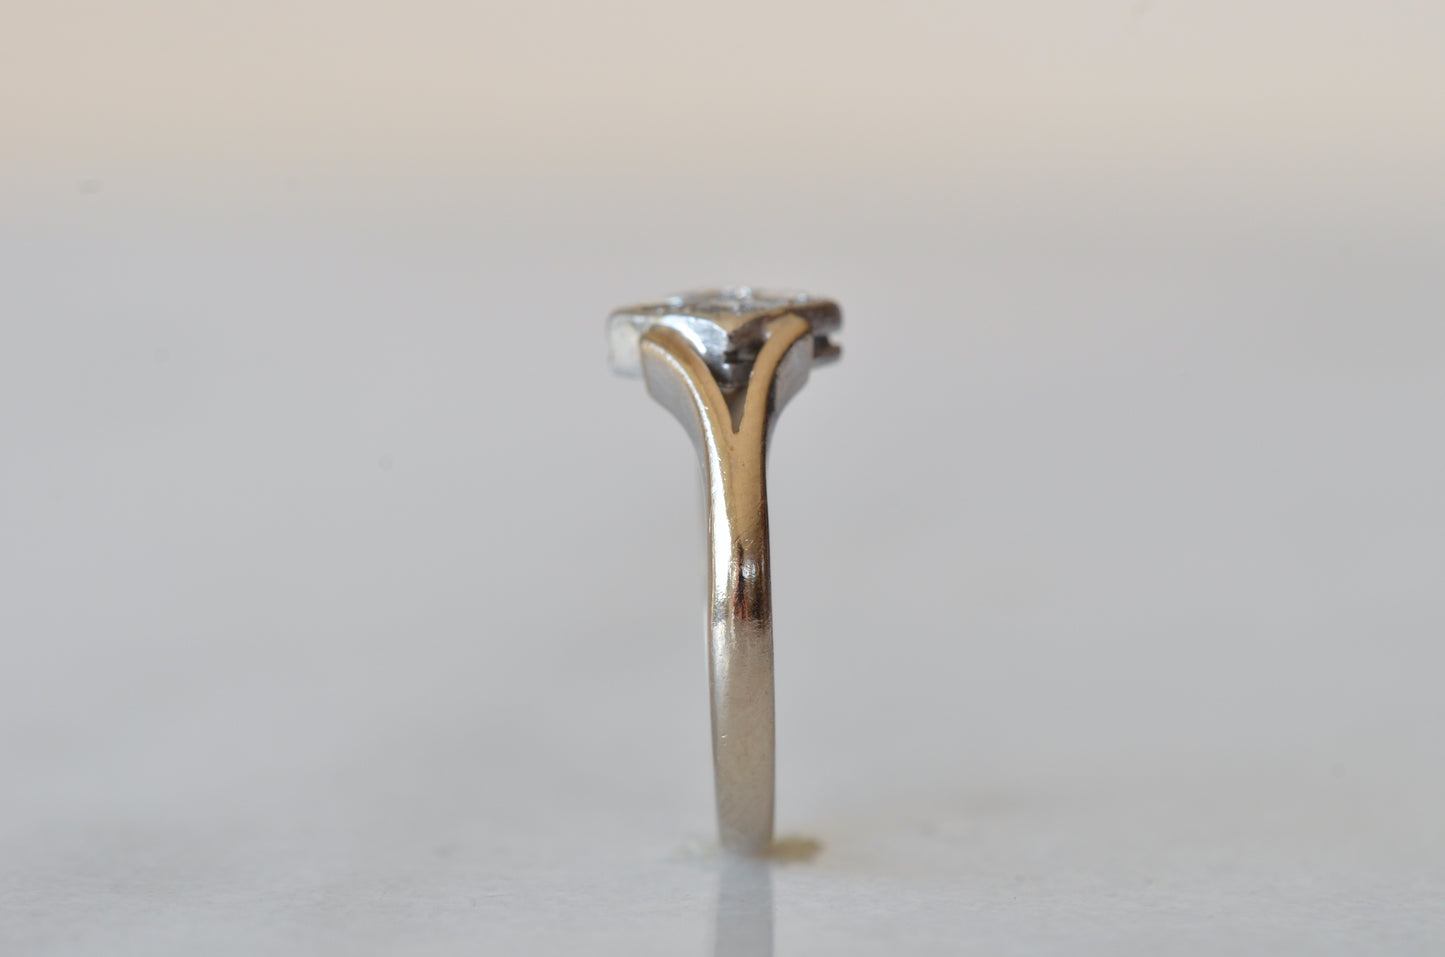 Elegant Art Deco Conversion Ring